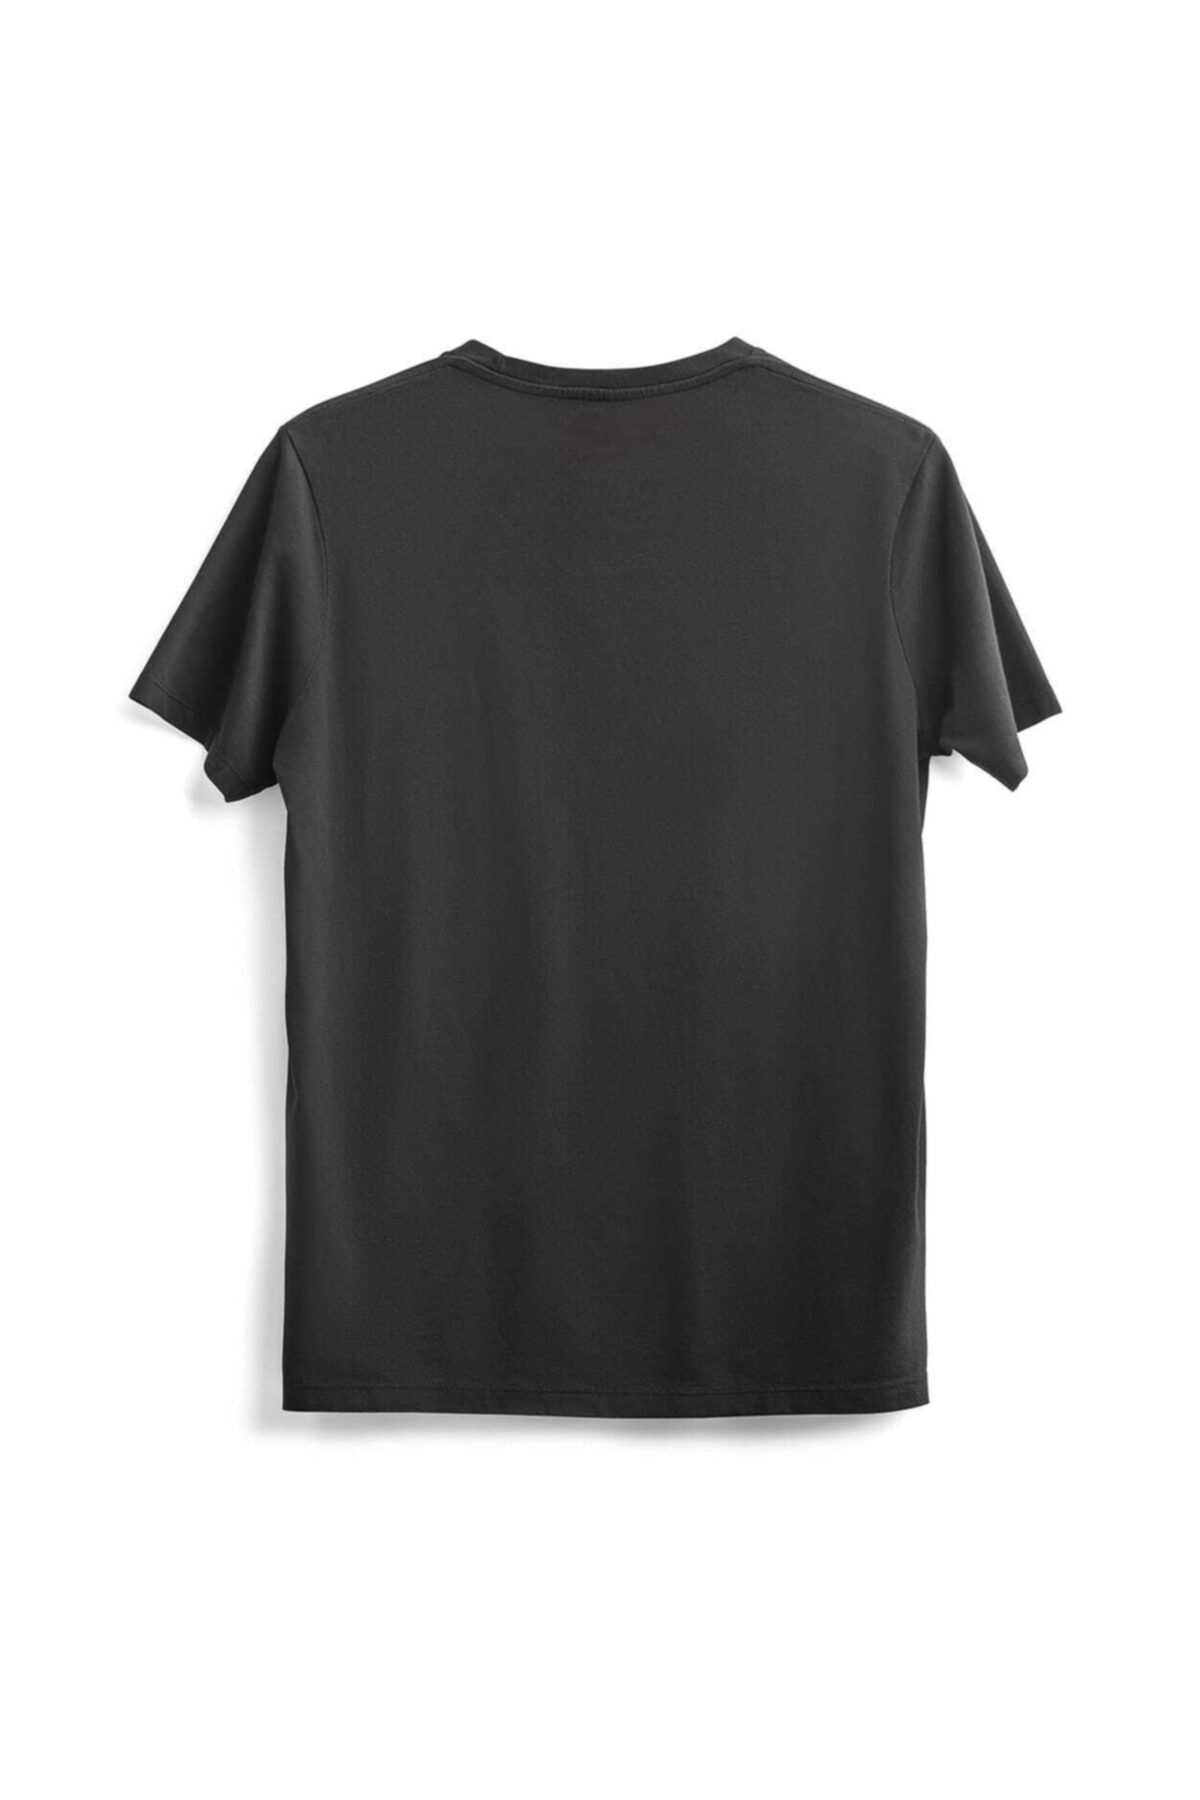 خرید اینترنتی تی شرت بلند برند Outrail رنگ نقره ای کد ty94560892